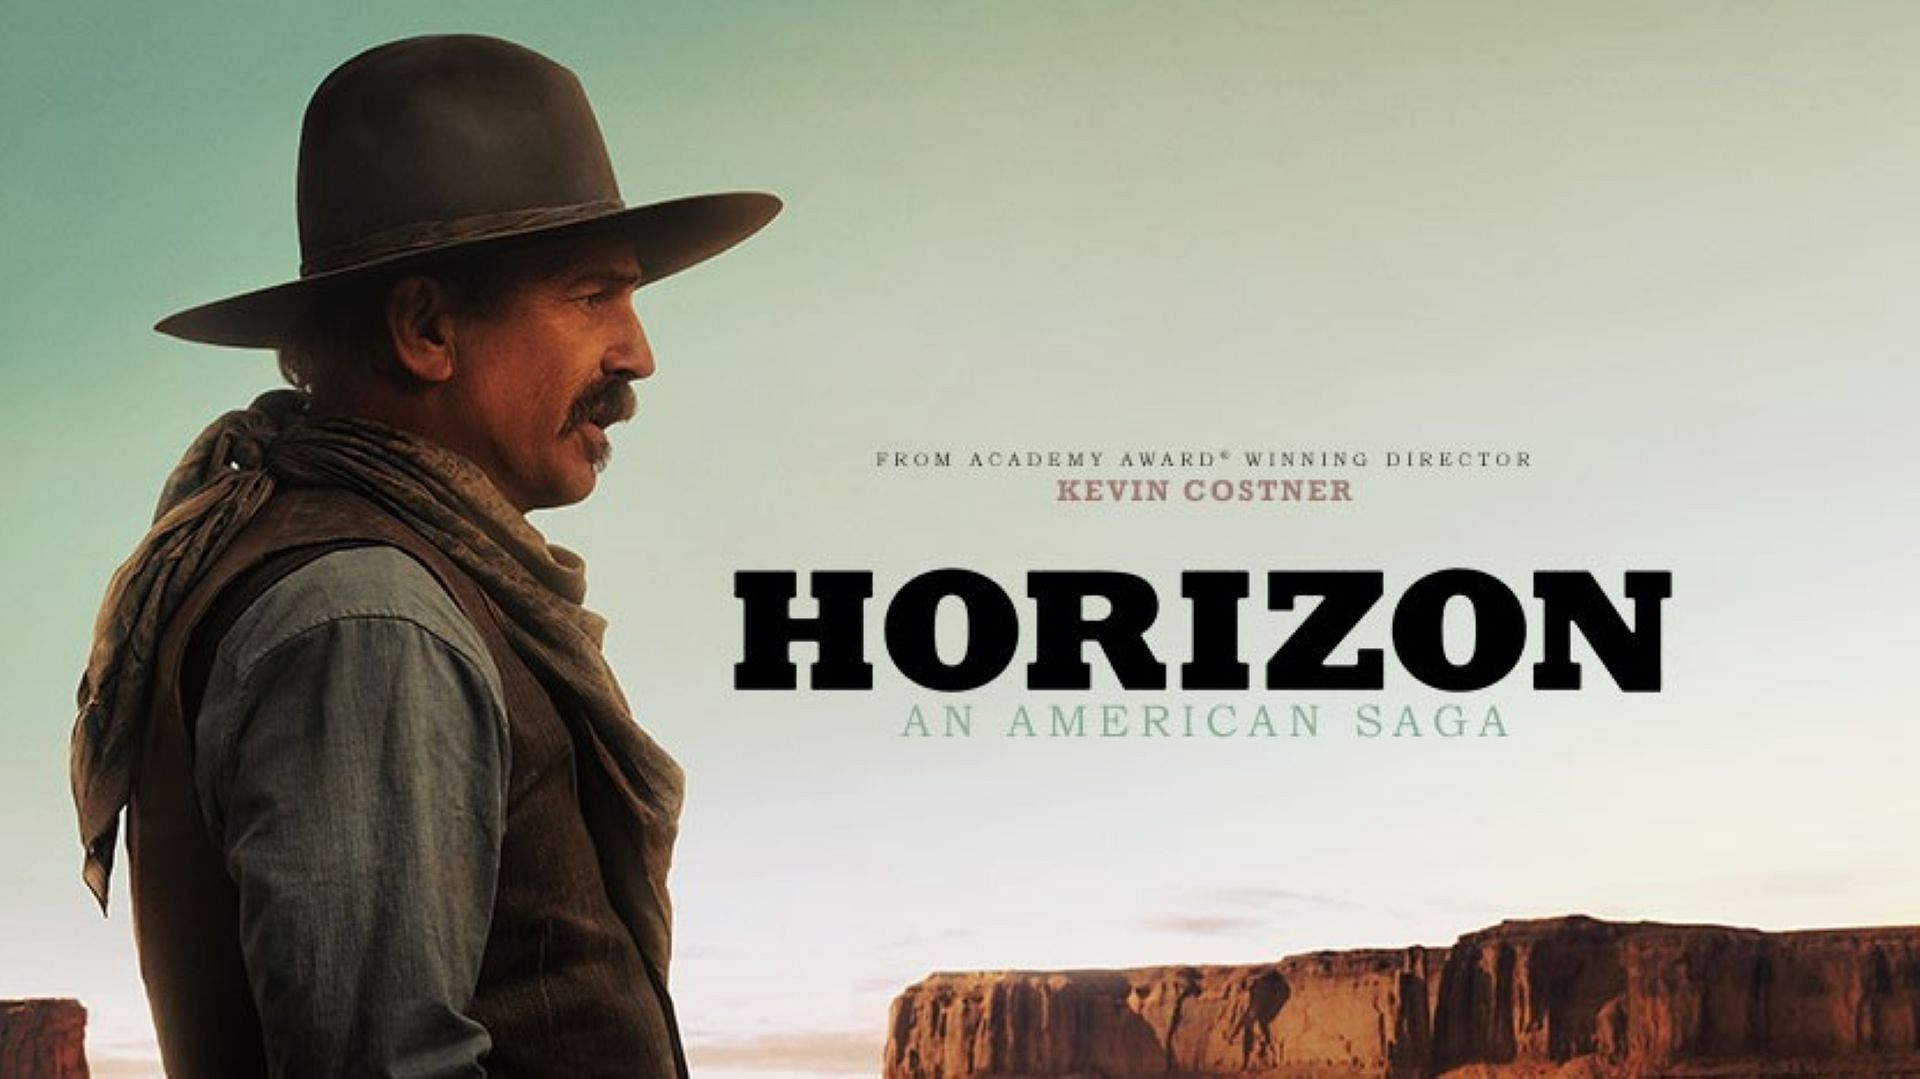 A poster of the film (image via horizonamericansaga.com)